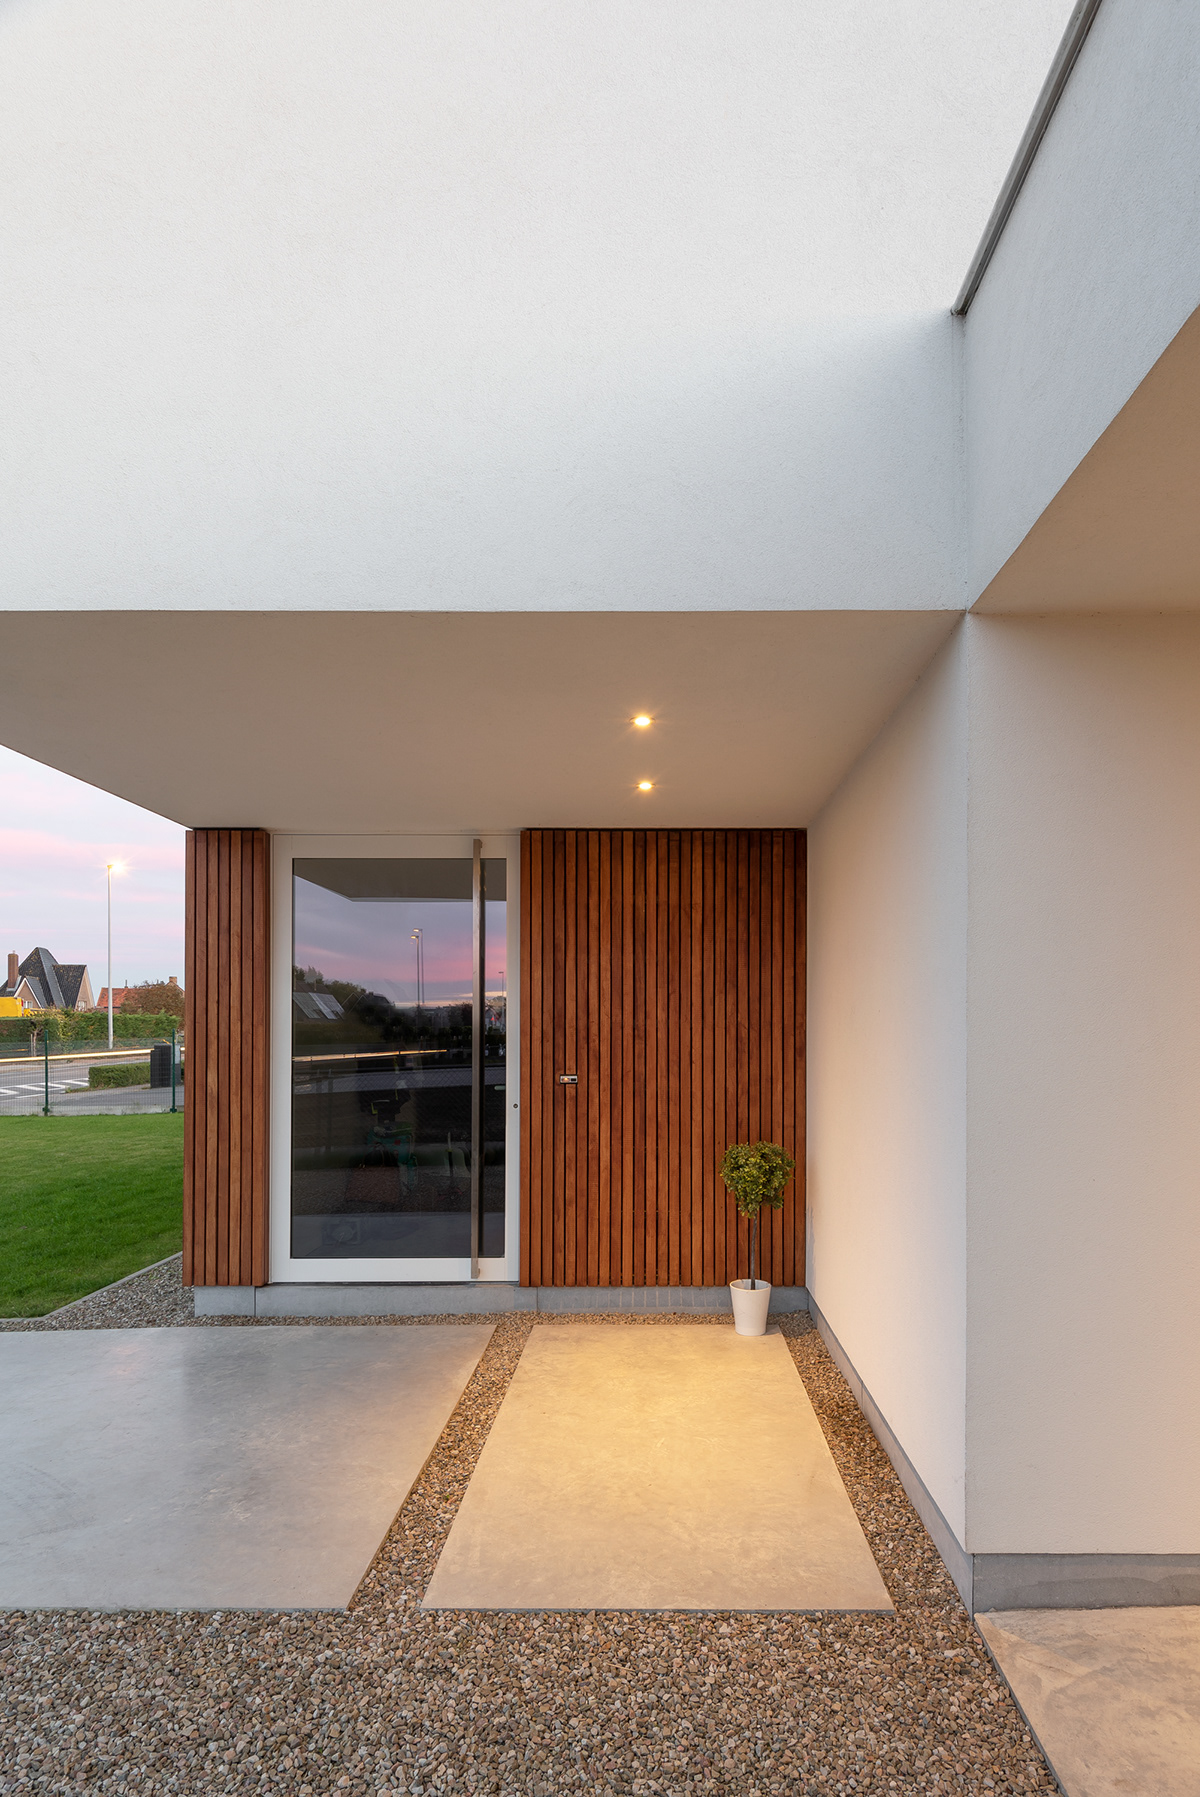 architecture minimal Minimalism White wood Photography  exterior lighting house architect